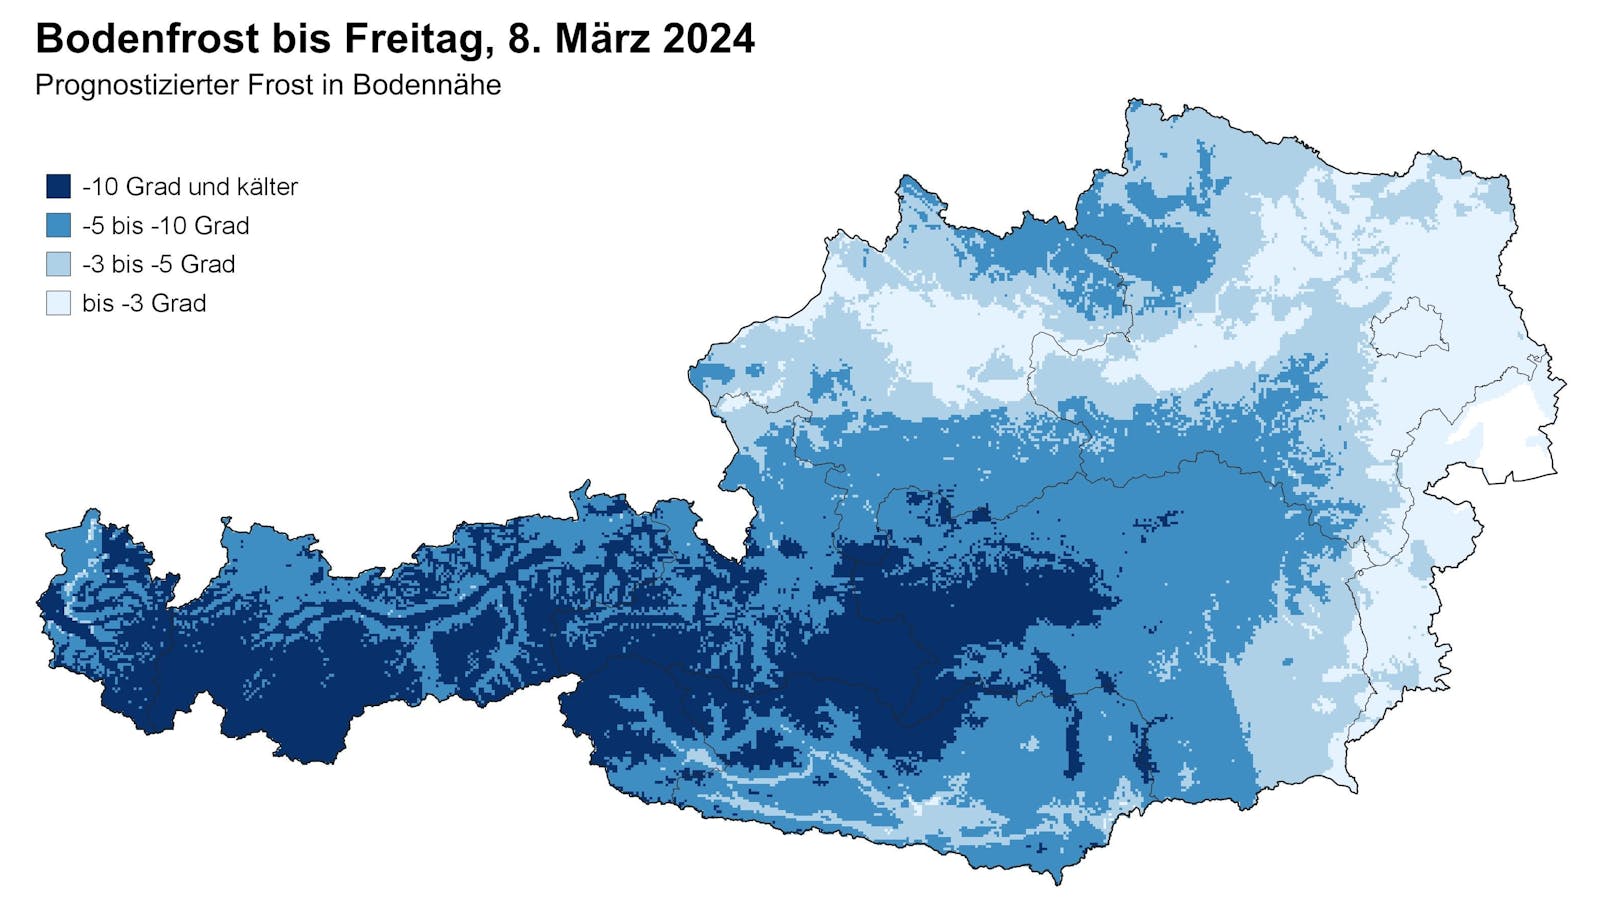 Prognostizierter Frost in Bodennähe bis 8. März 2024.